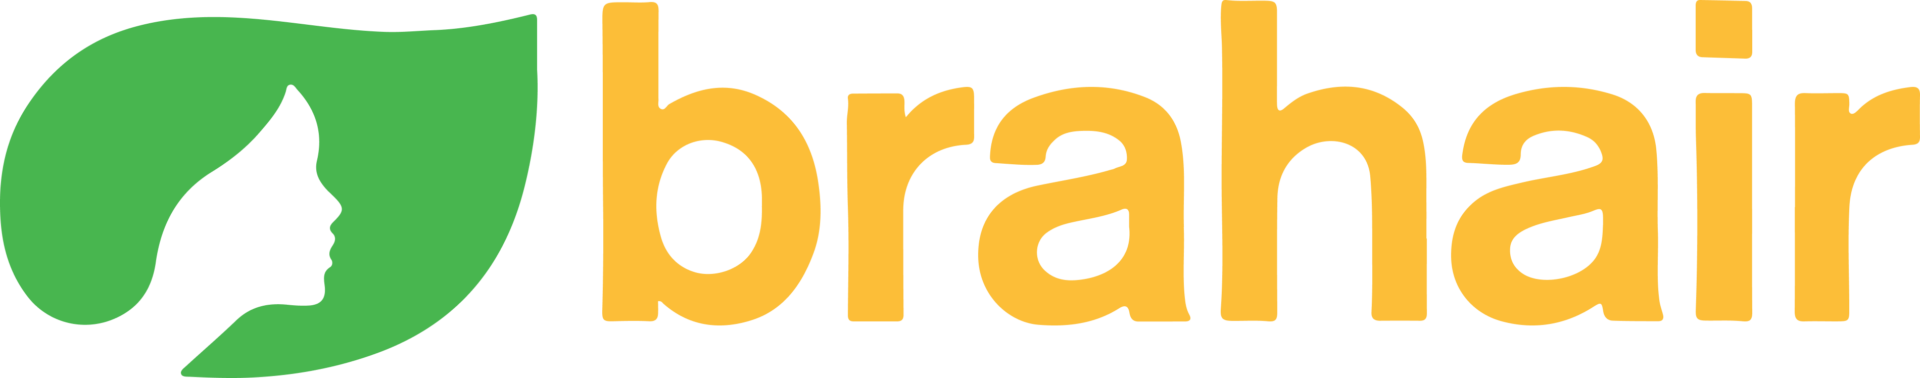 Brahair